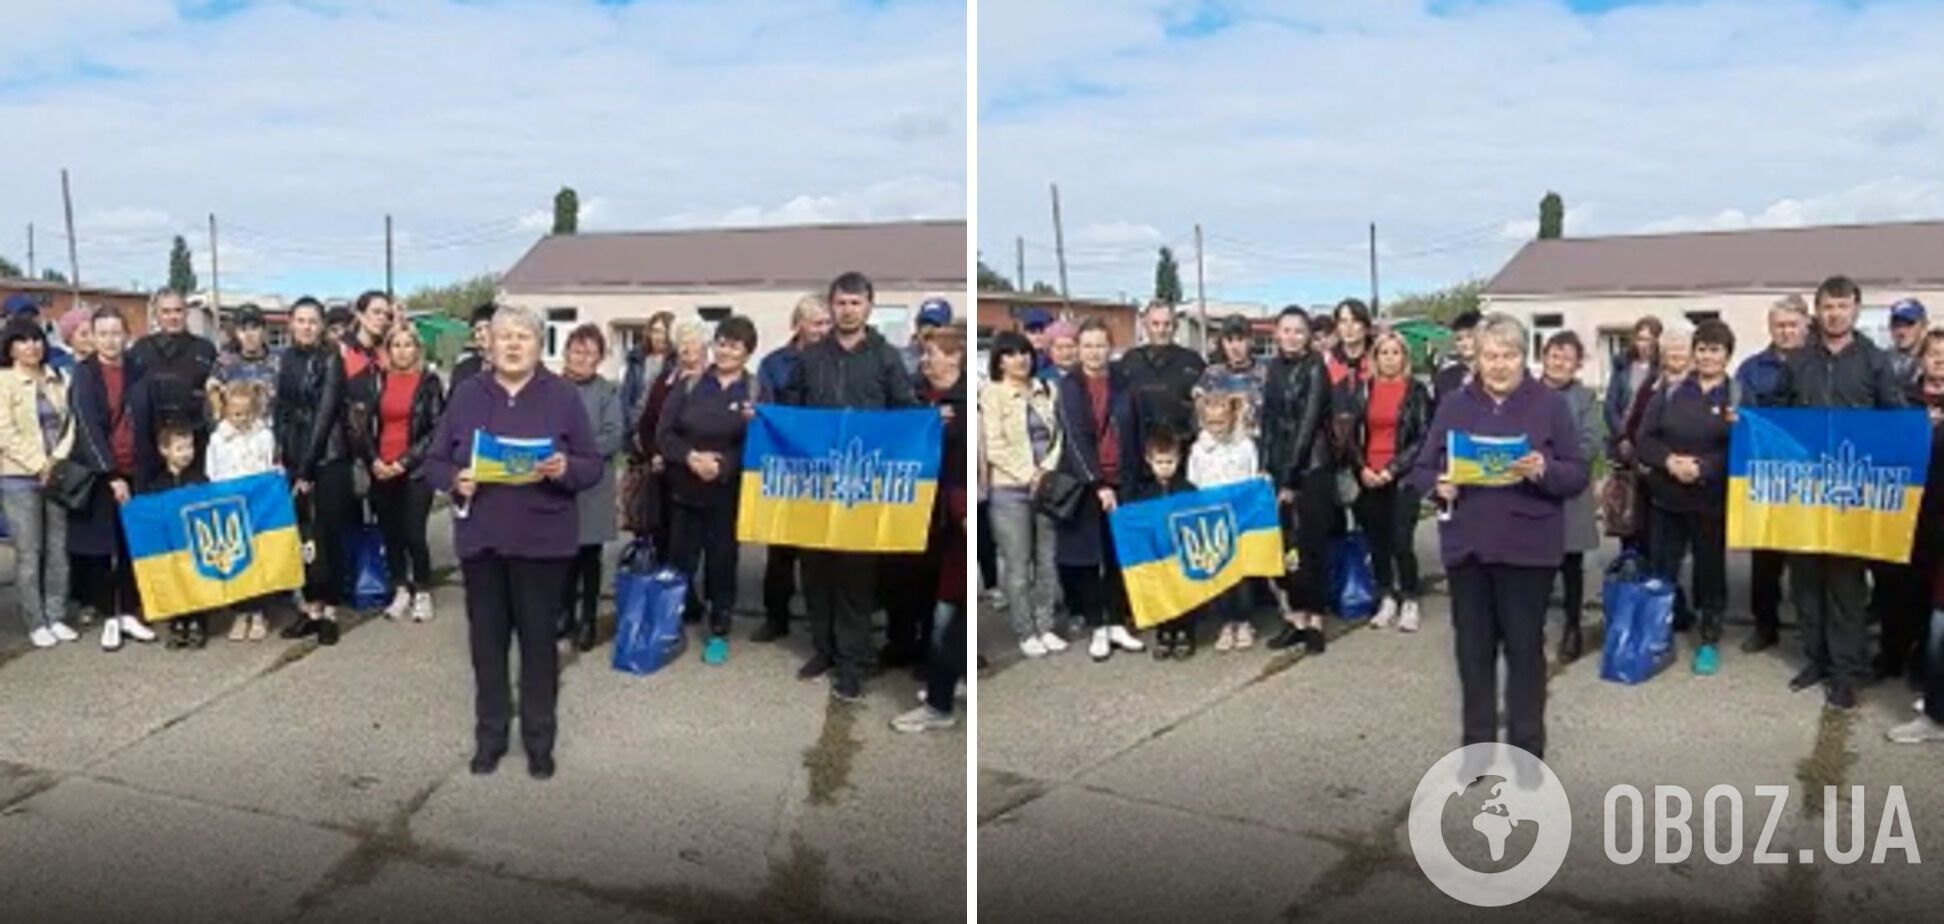 Украинцы из оккупированной Снегиревки выступили против ''референдума'': мы никогда не хотели и не будем хотеть в Россию. Видео